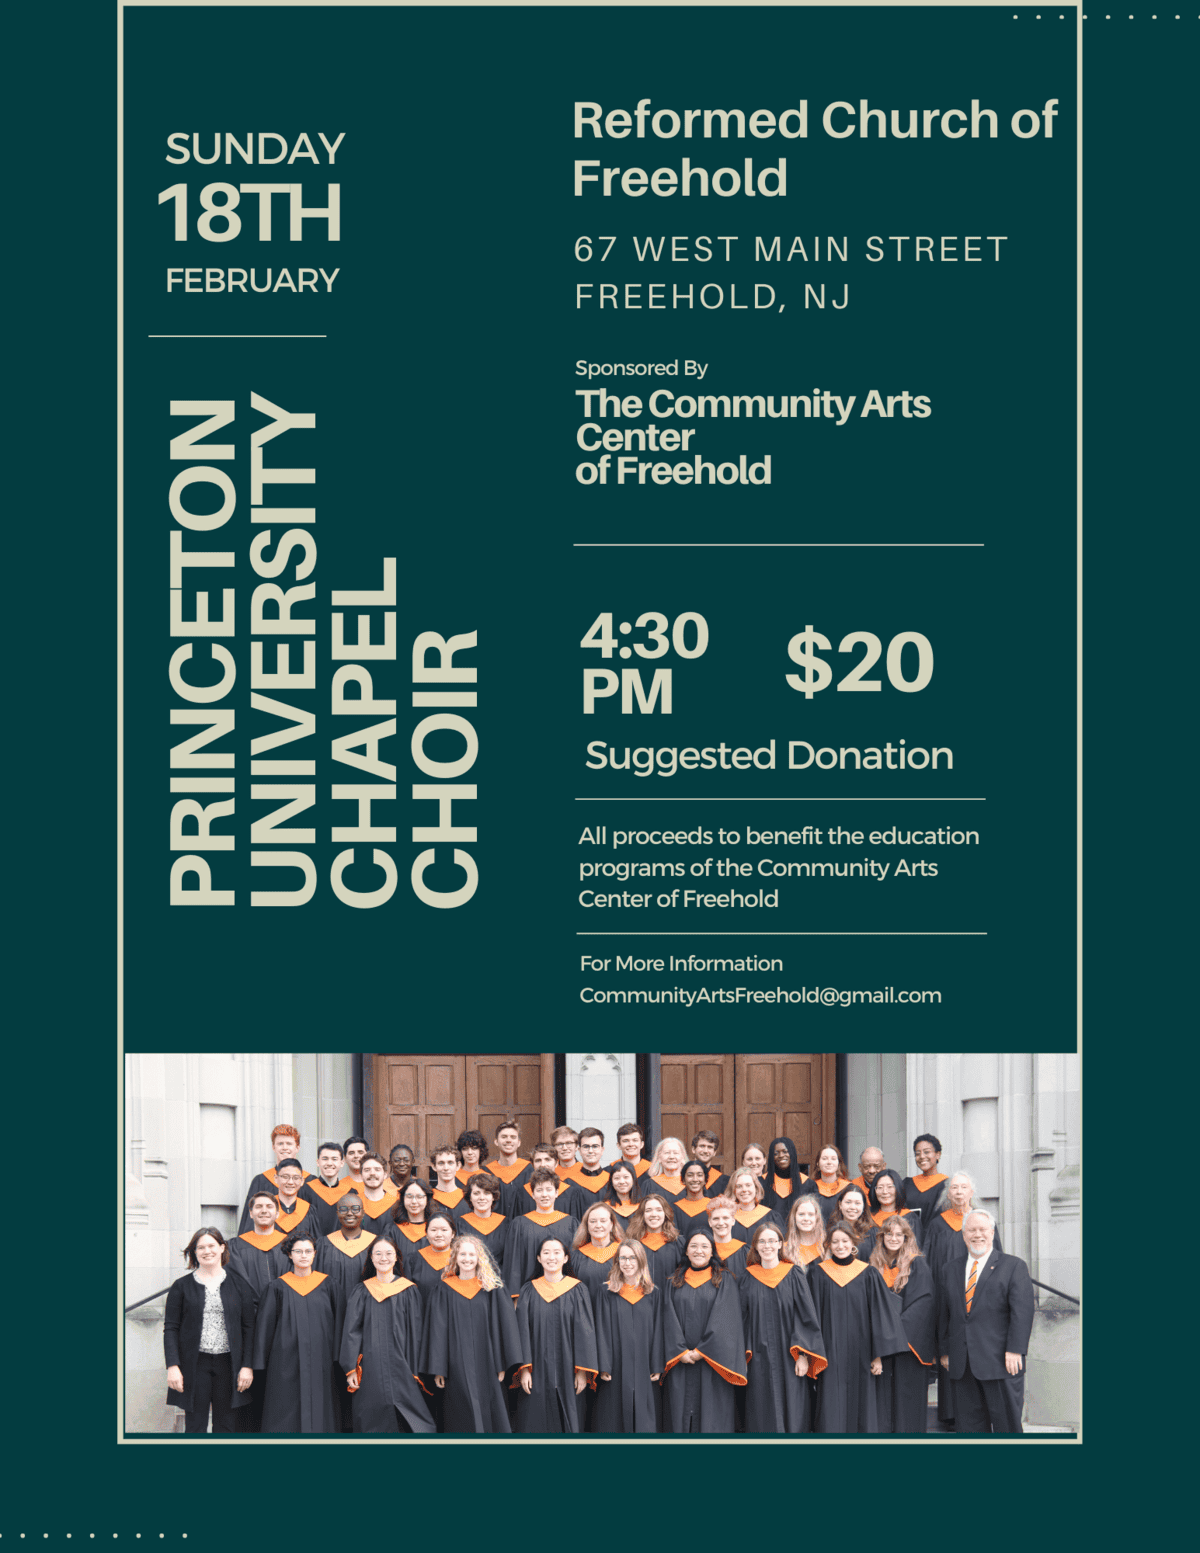 Princeton University Chapel Choir